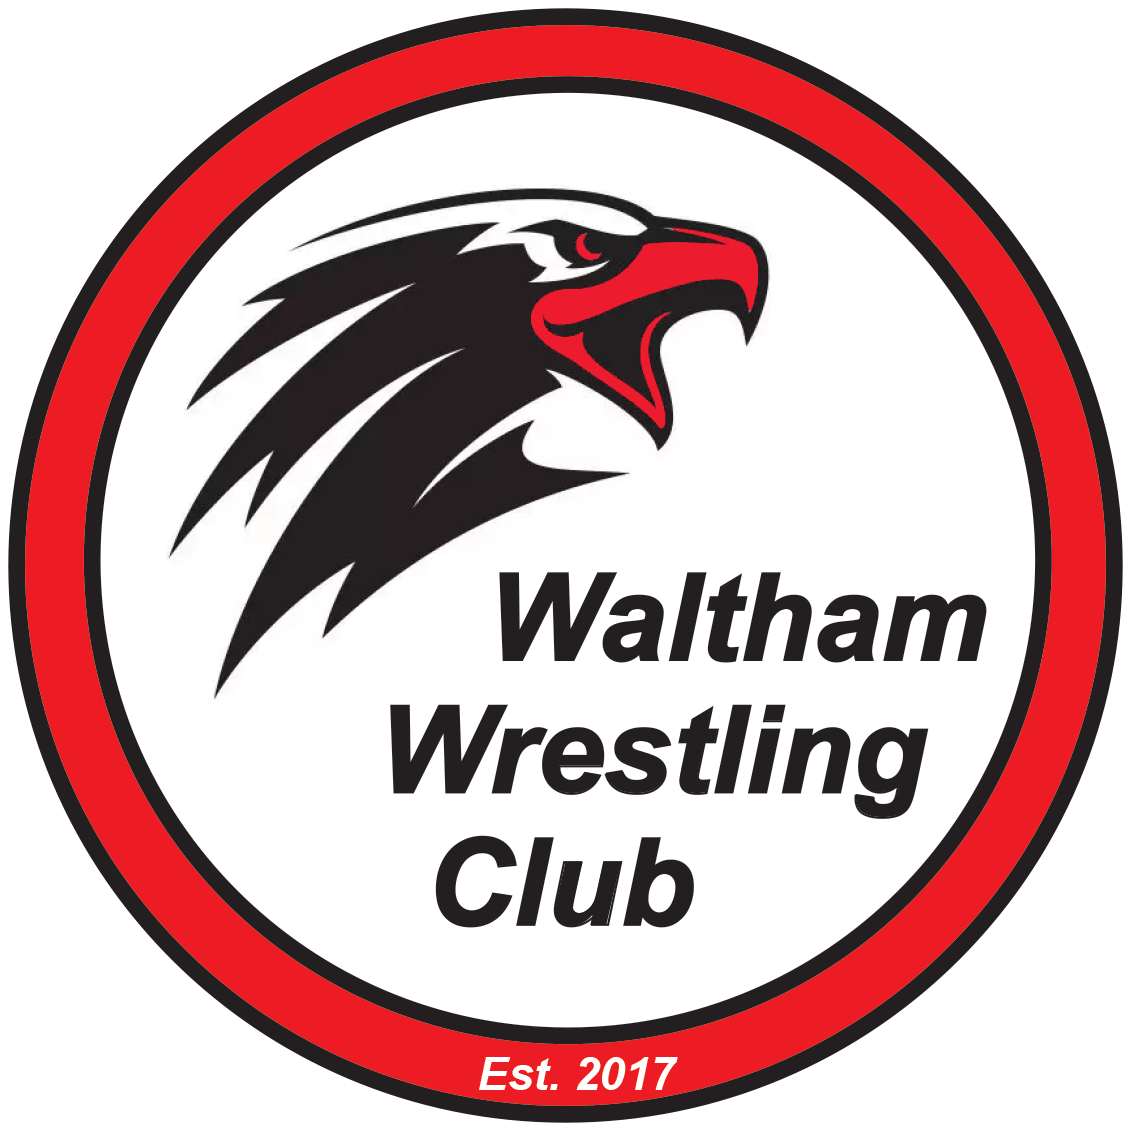 Waltham Wrestling Club